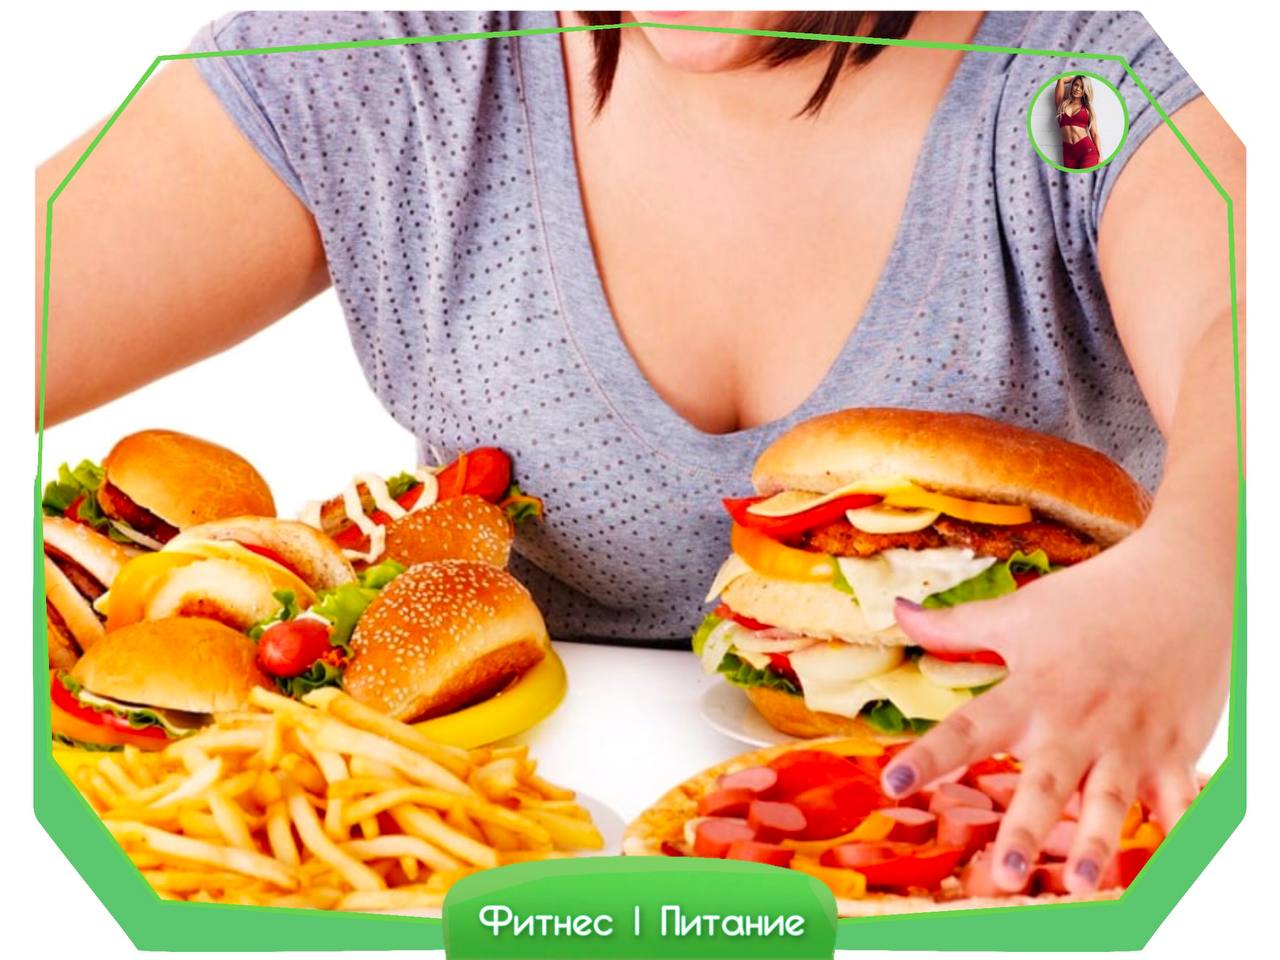 Нервный голод. Нерациональное питание. Компульсивное переедание. Нарушение питания. Неправильное питание и ожирение.